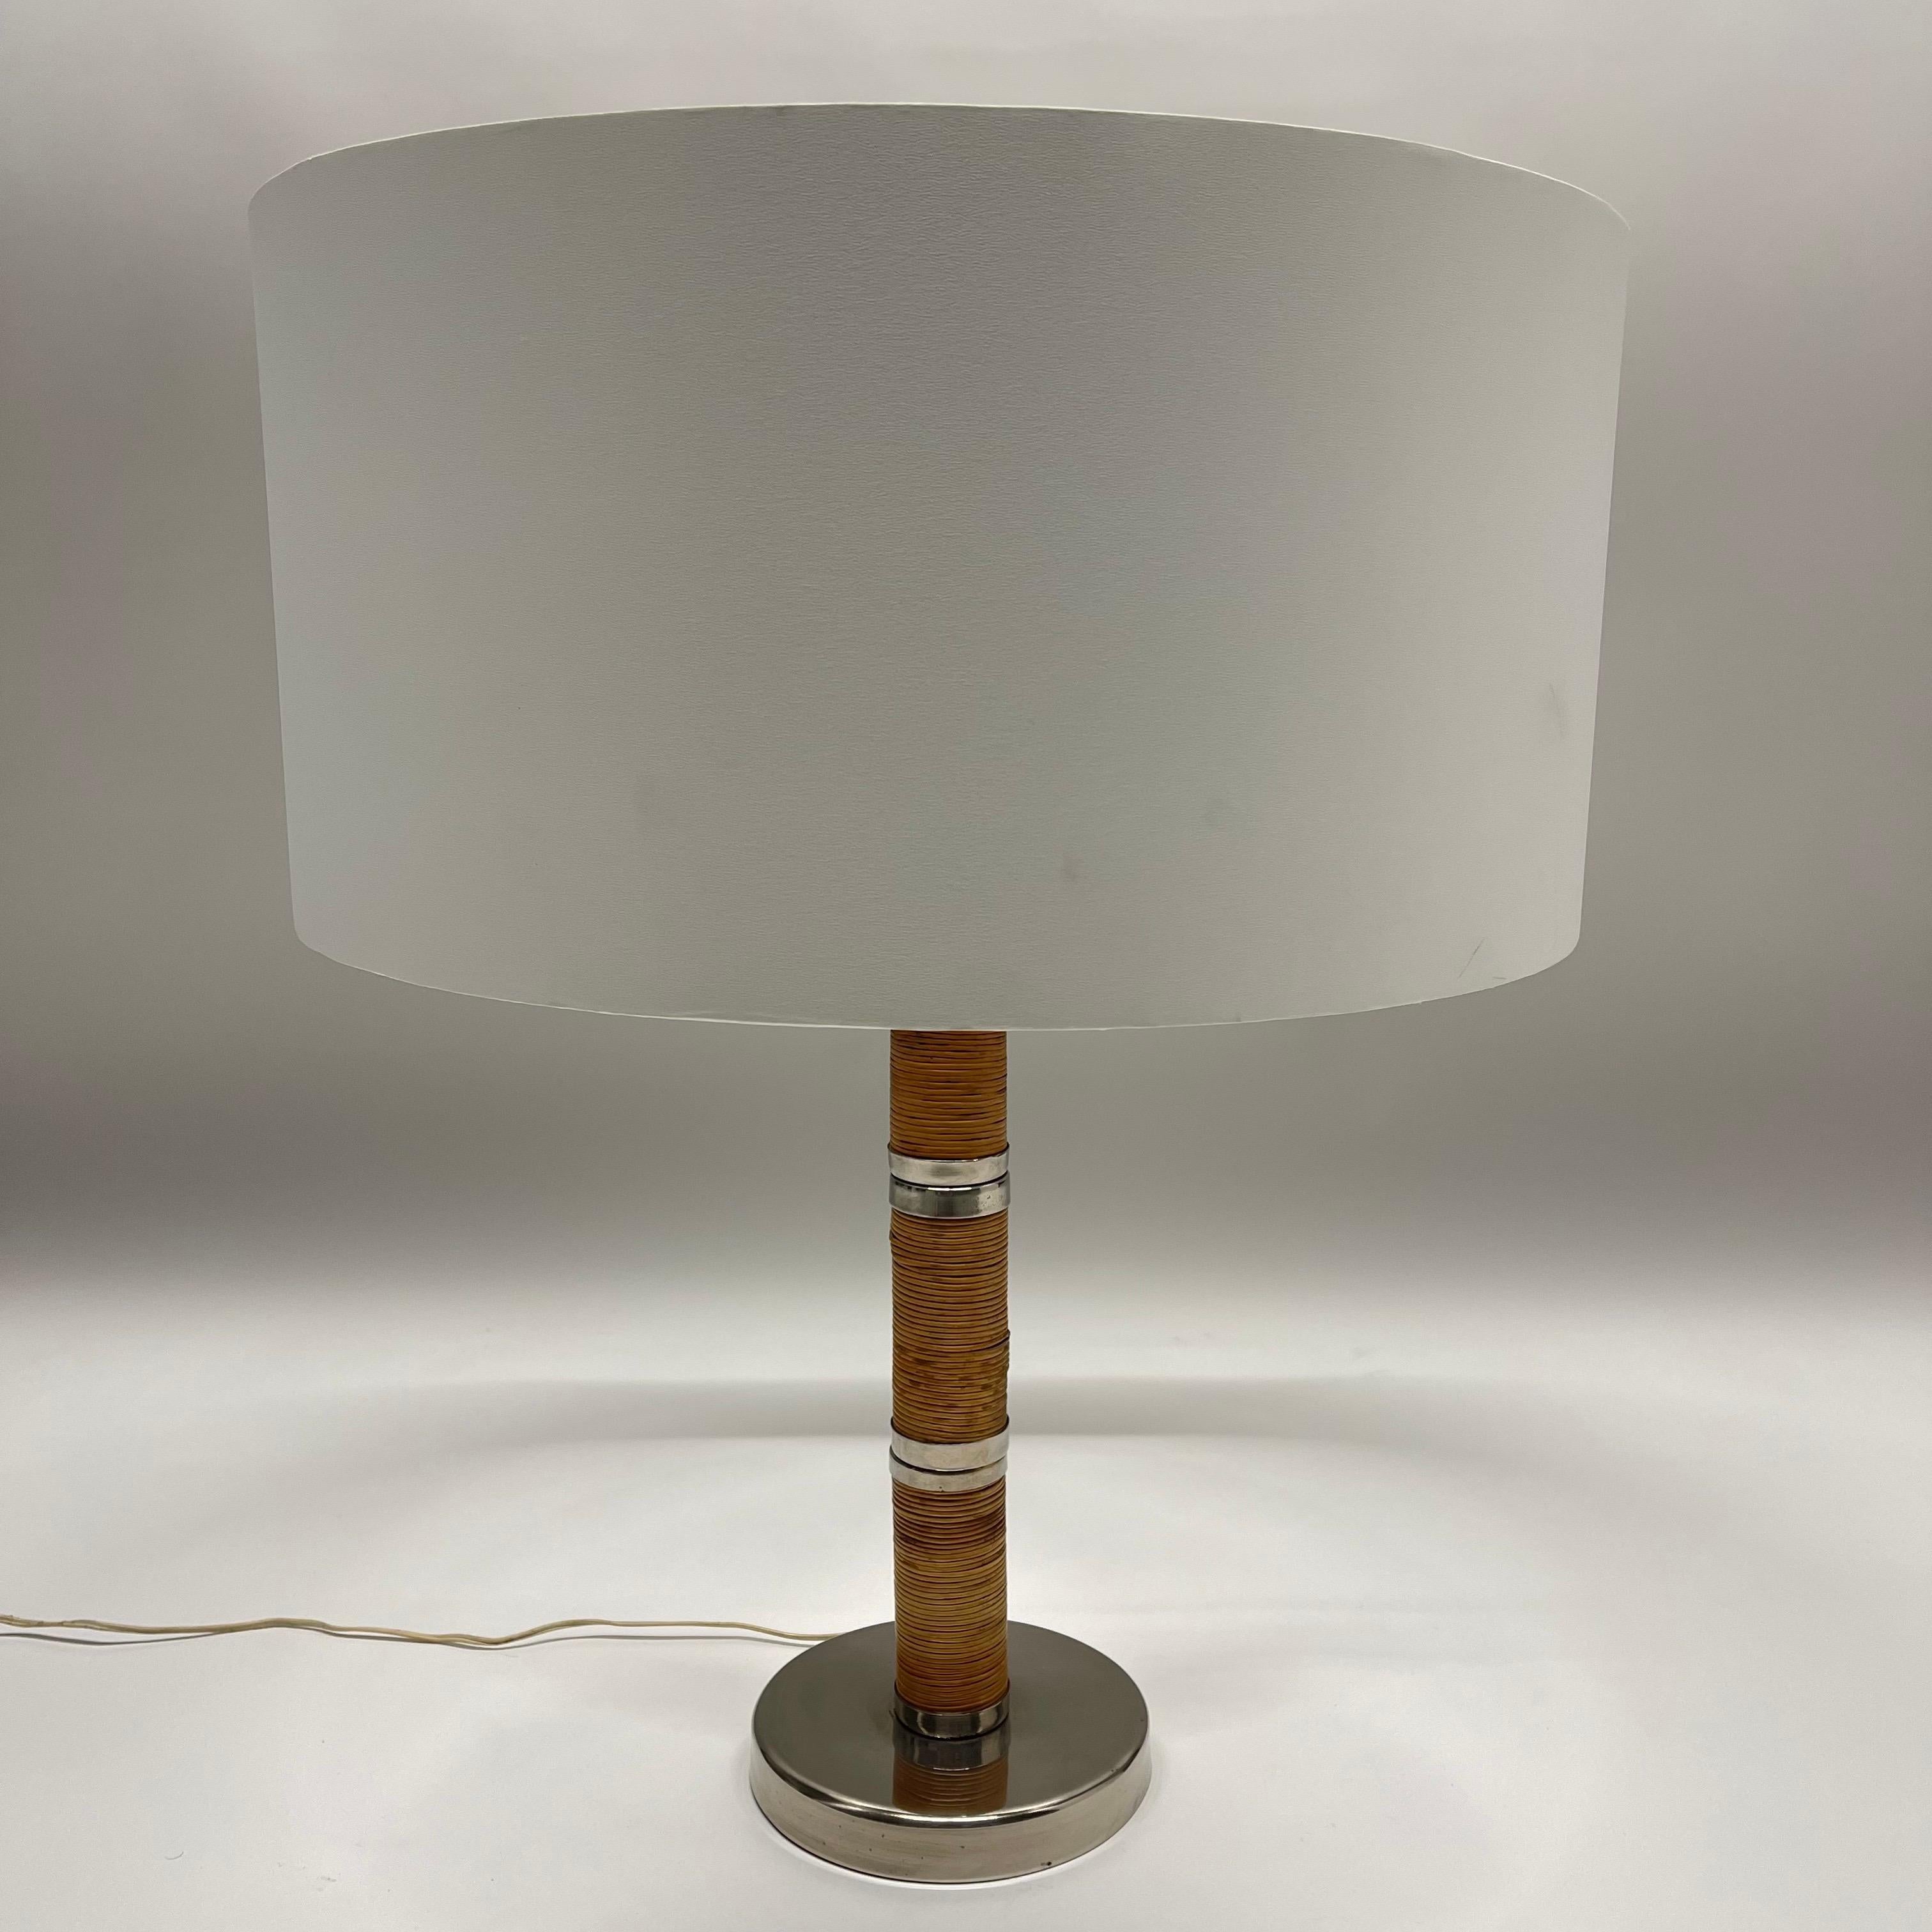 Lampe de table du milieu du siècle, en rotin tressé à la main, avec des accessoires en laiton chromé, dans le style de Paavo Tynell, Italie, vers 1970.

L'abat-jour est utilisé à des fins de présentation uniquement.